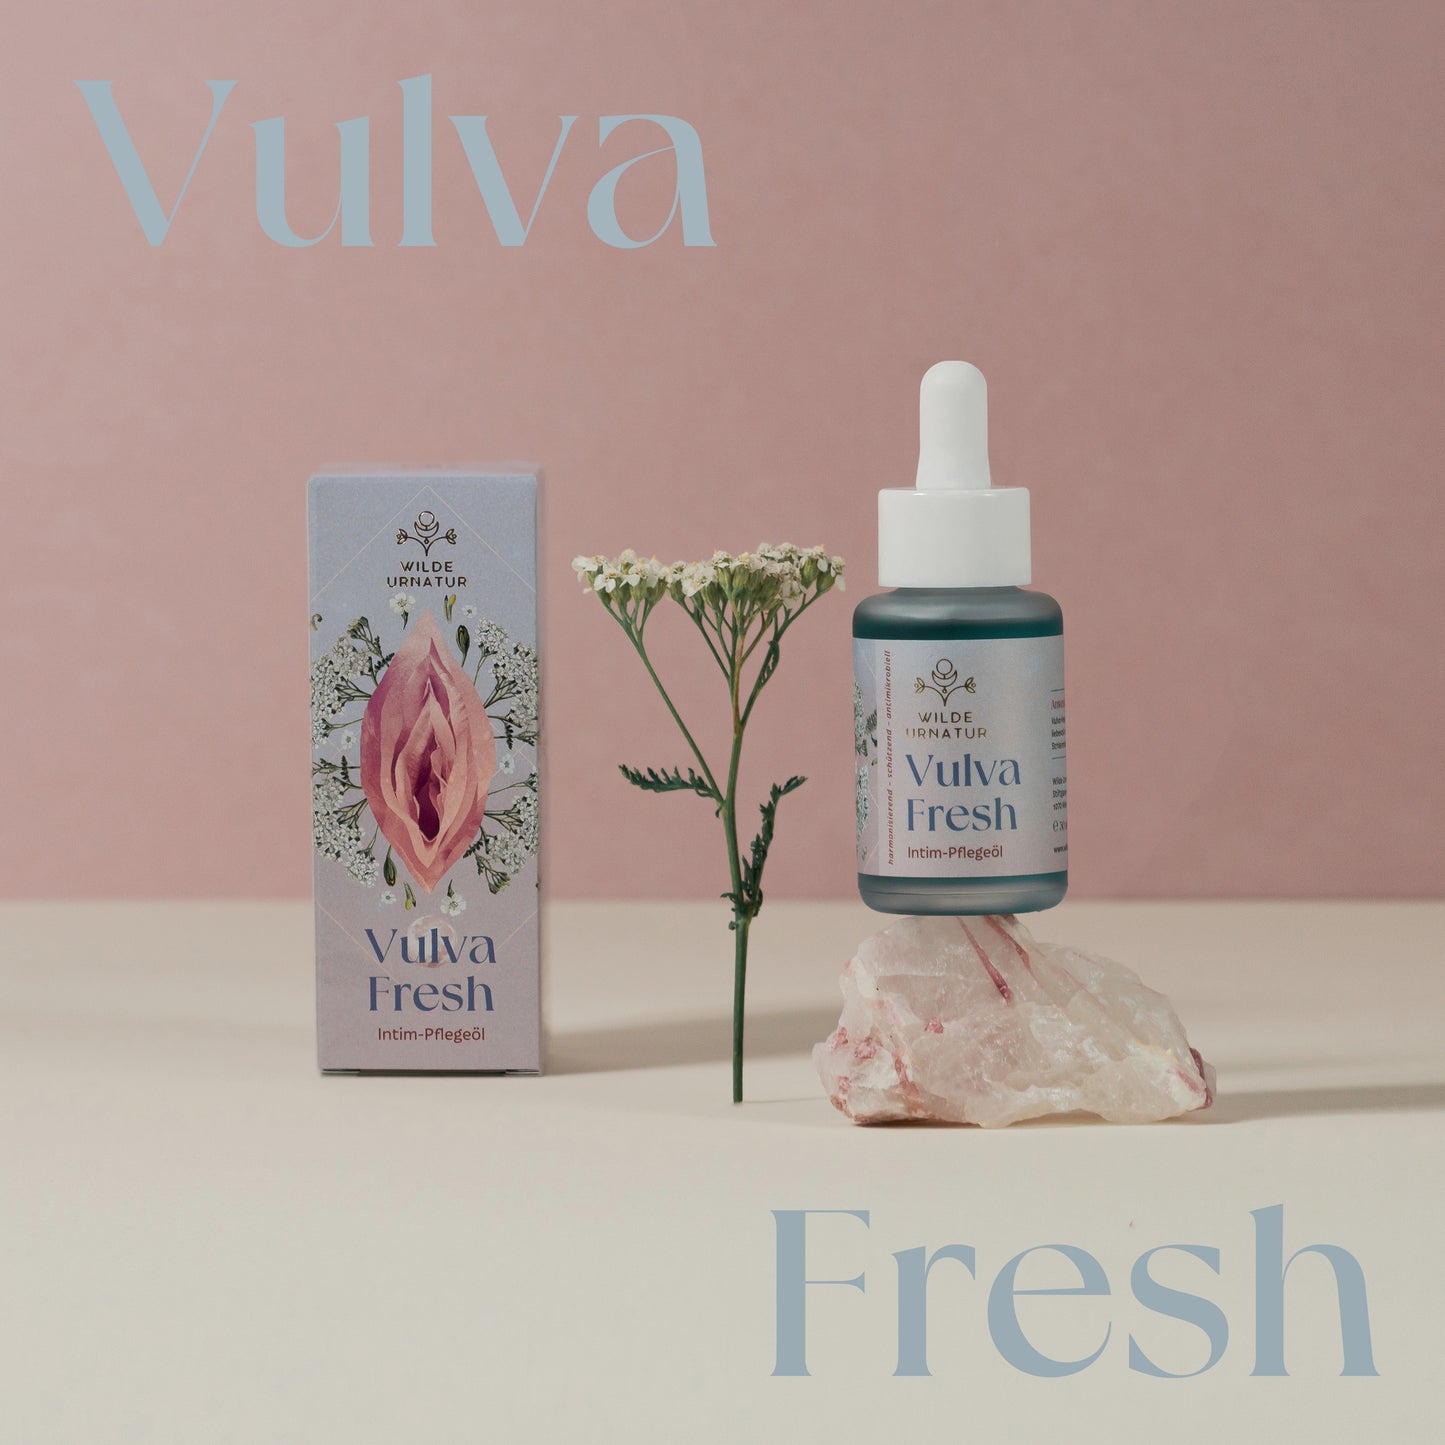 Vulva Fresh Intim-Pflegeöl